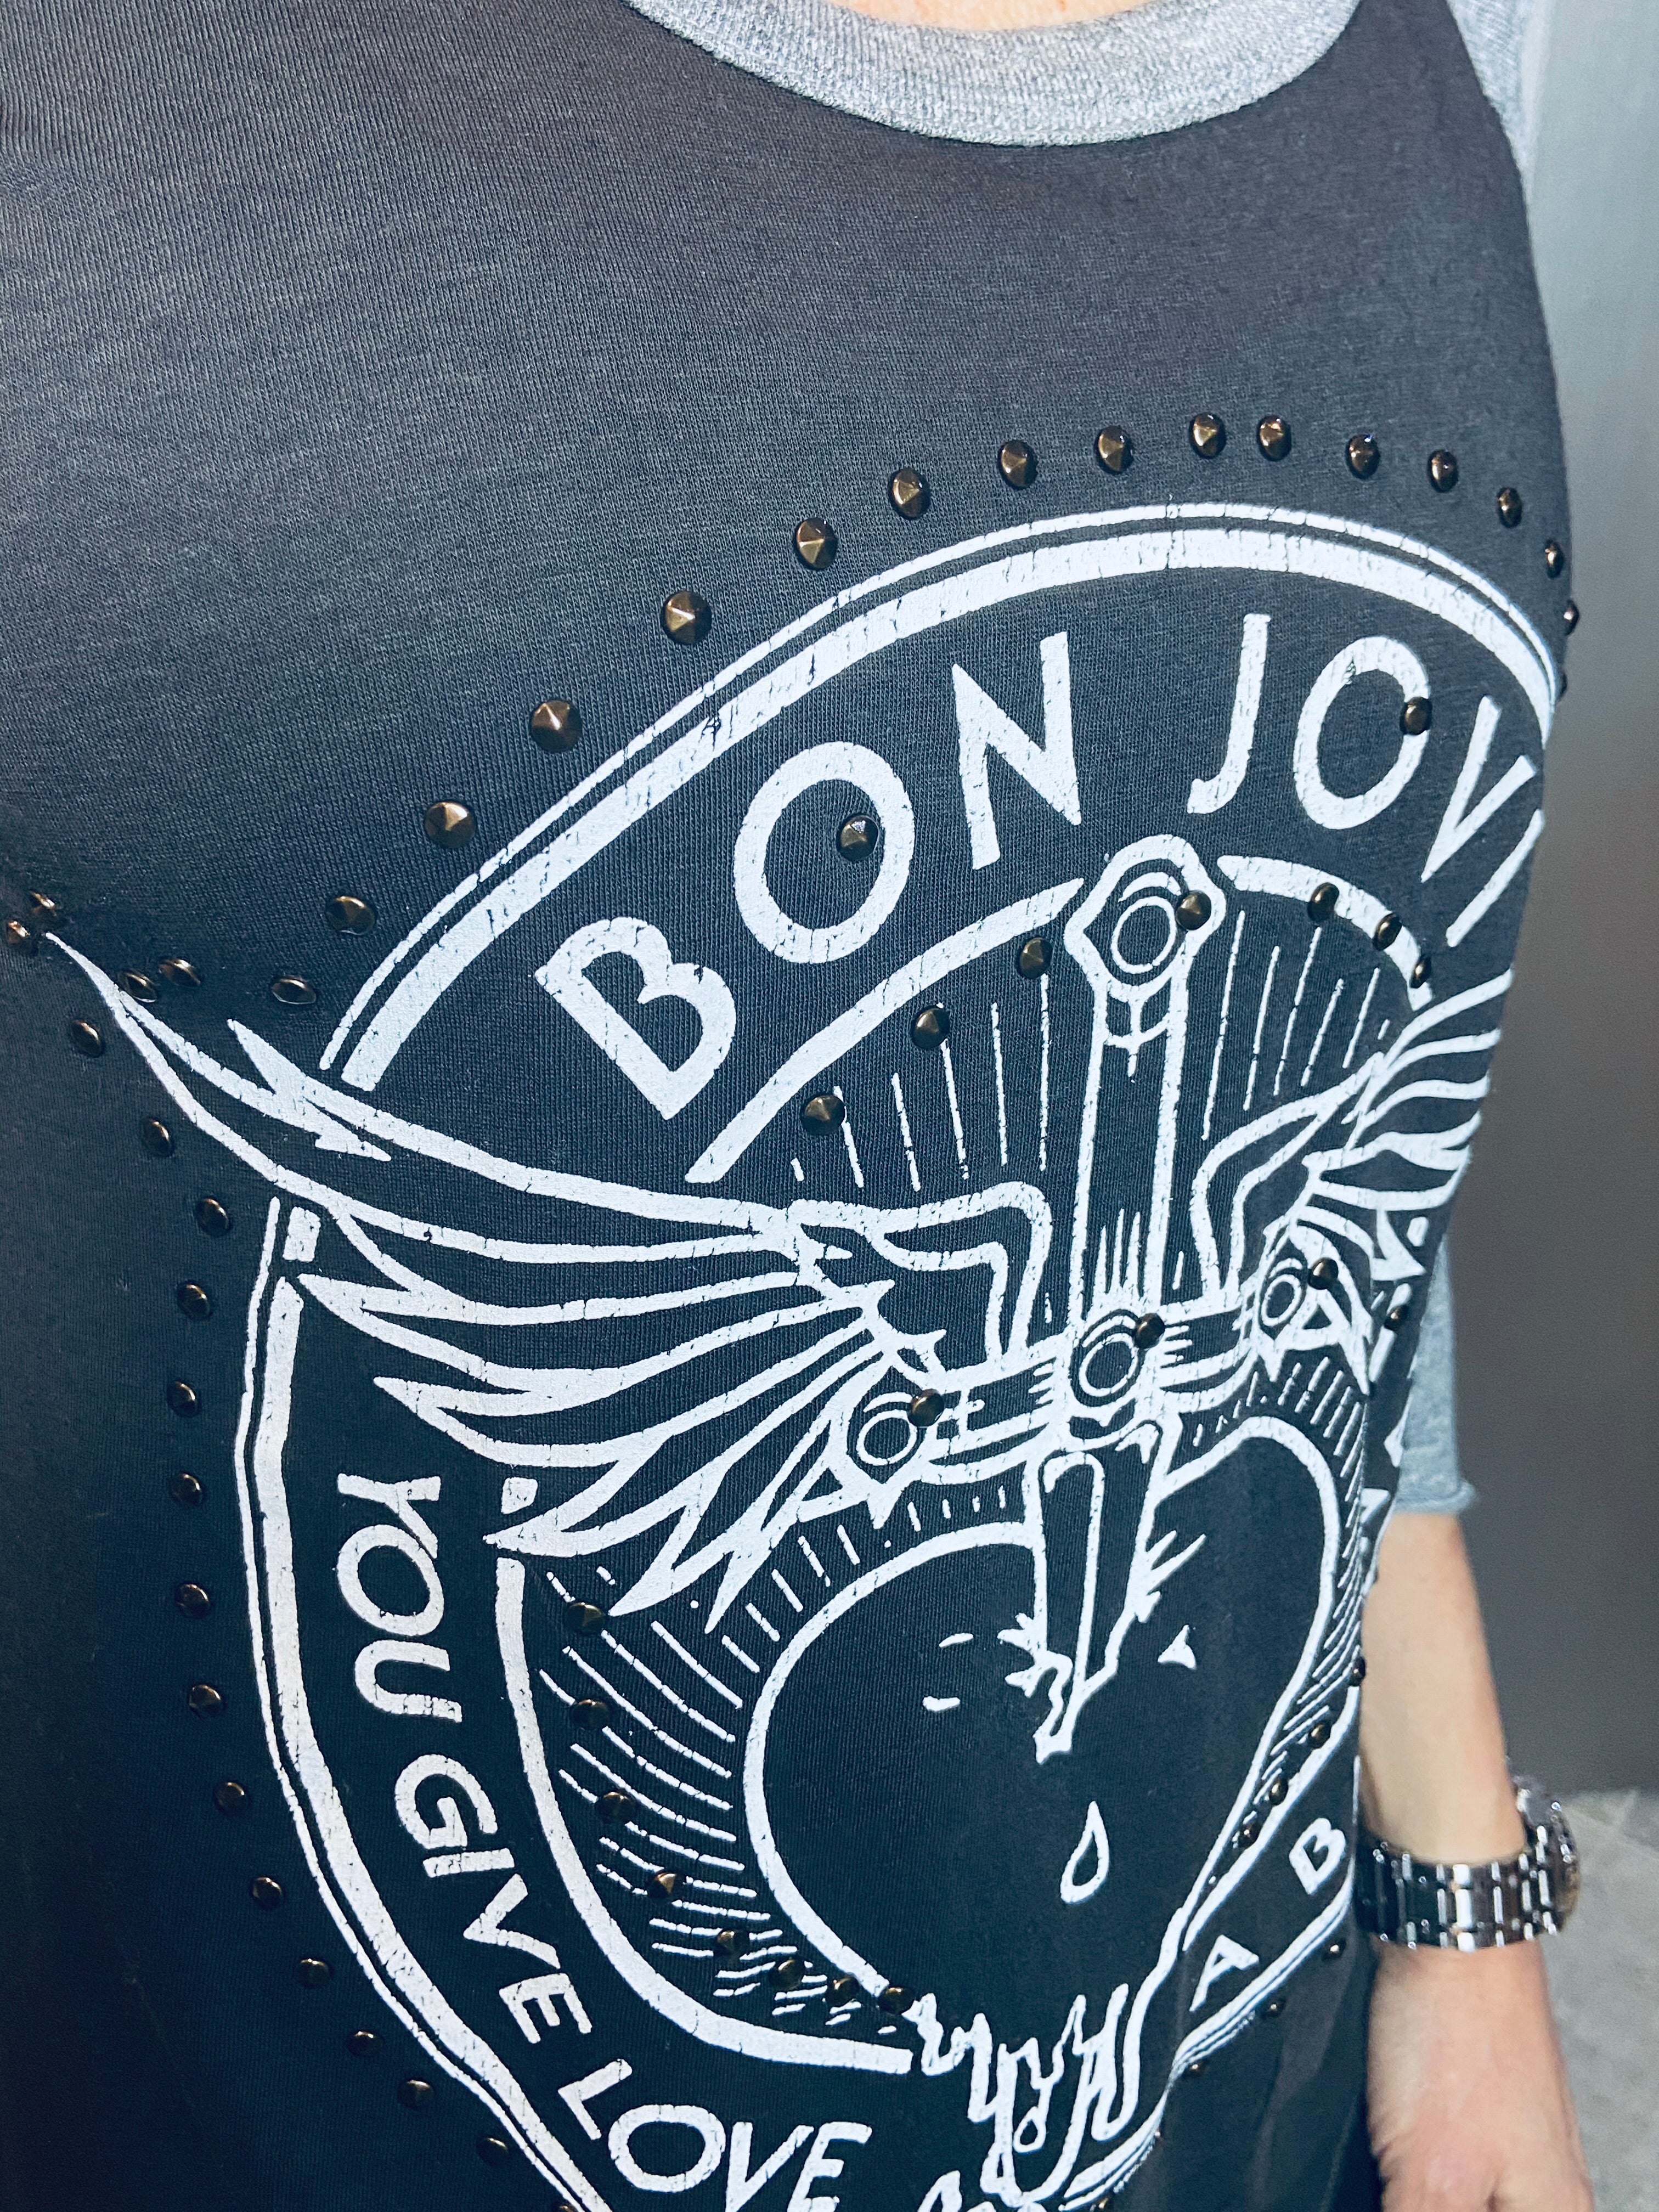 Bon Jovi baseball tee